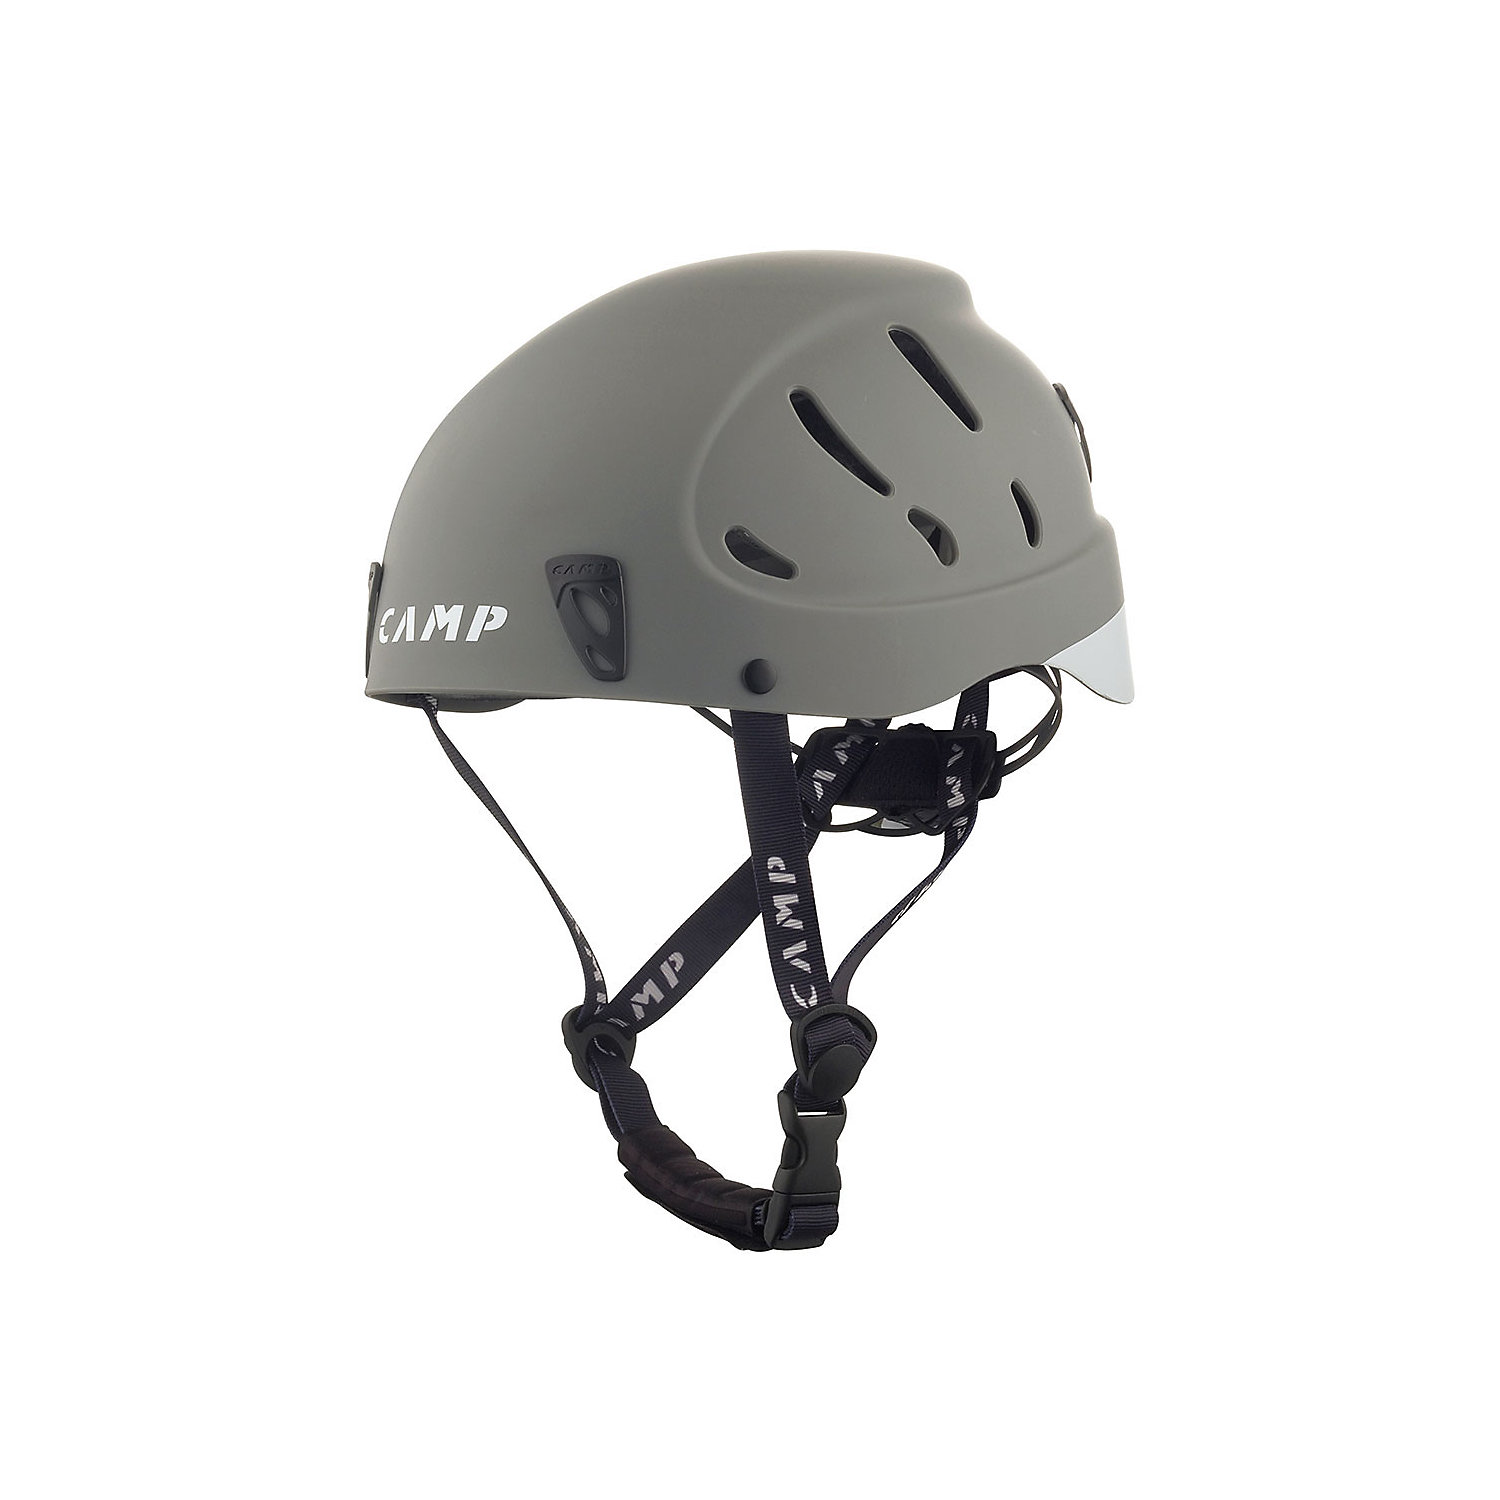 Camp USA Armour Helmet